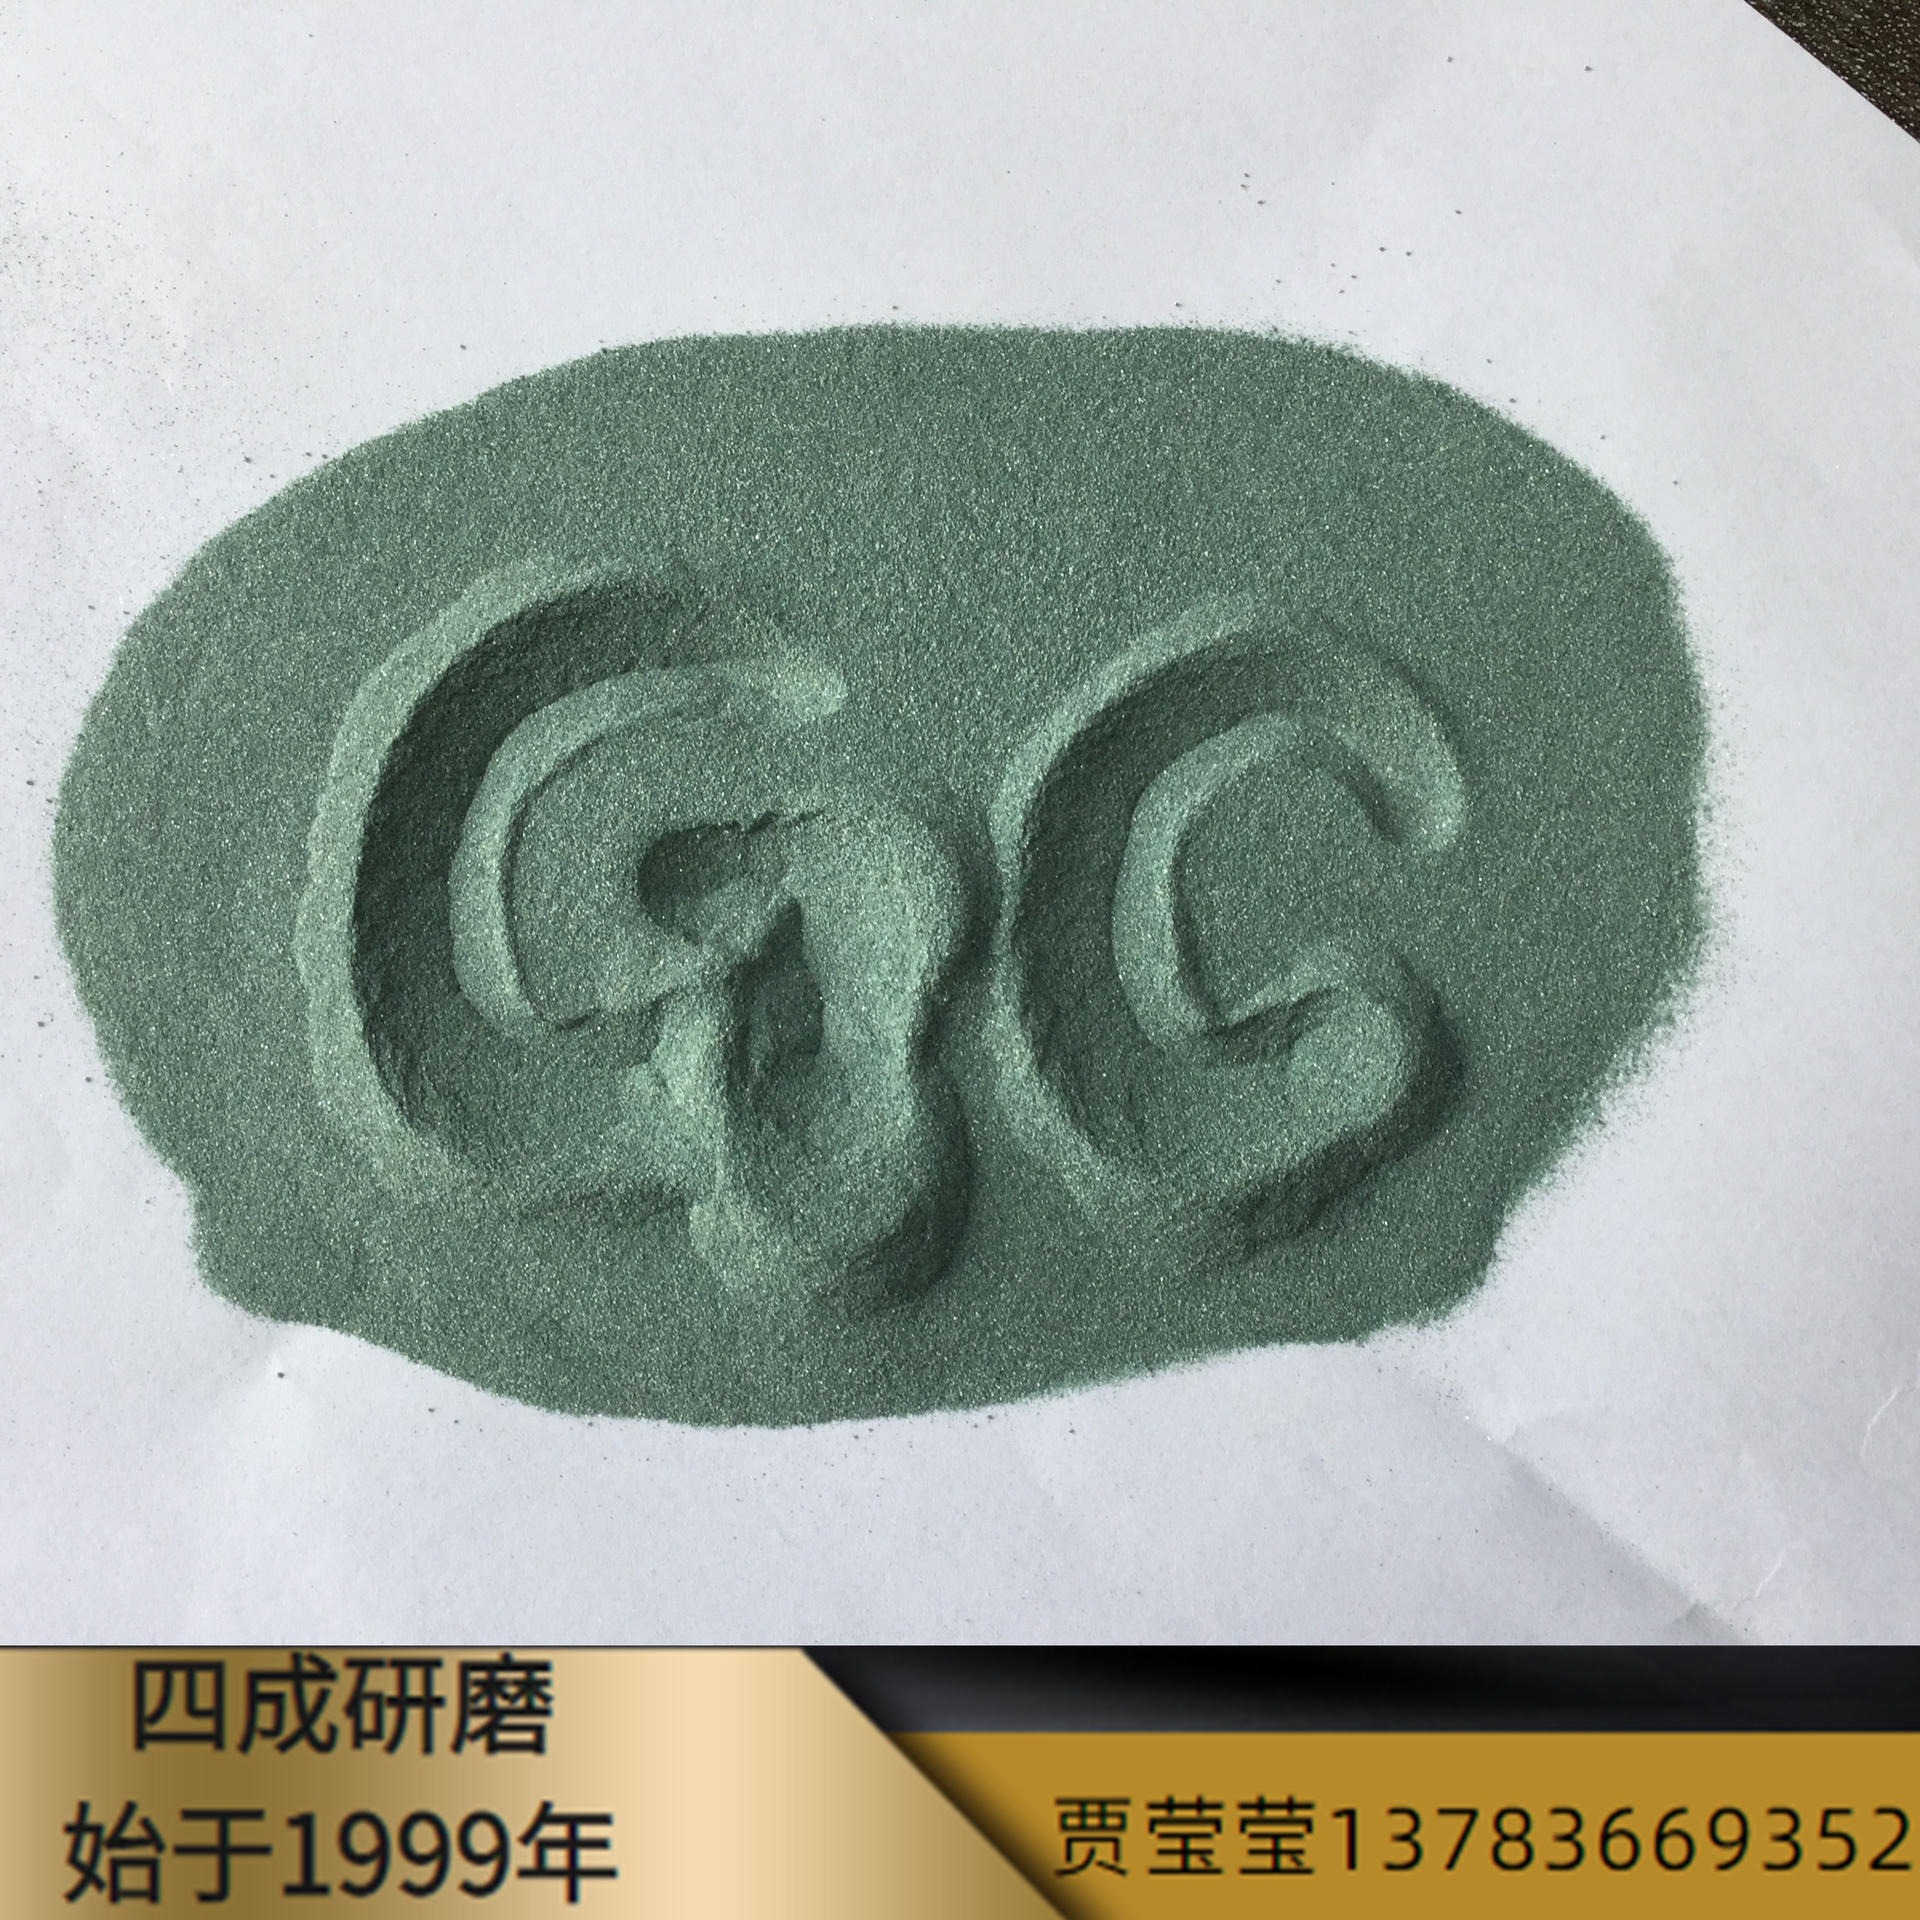 水磨片生产用绿碳化硅 抛光片生产用绿碳化硅 不锈钢制品喷砂表面处理用绿碳化硅